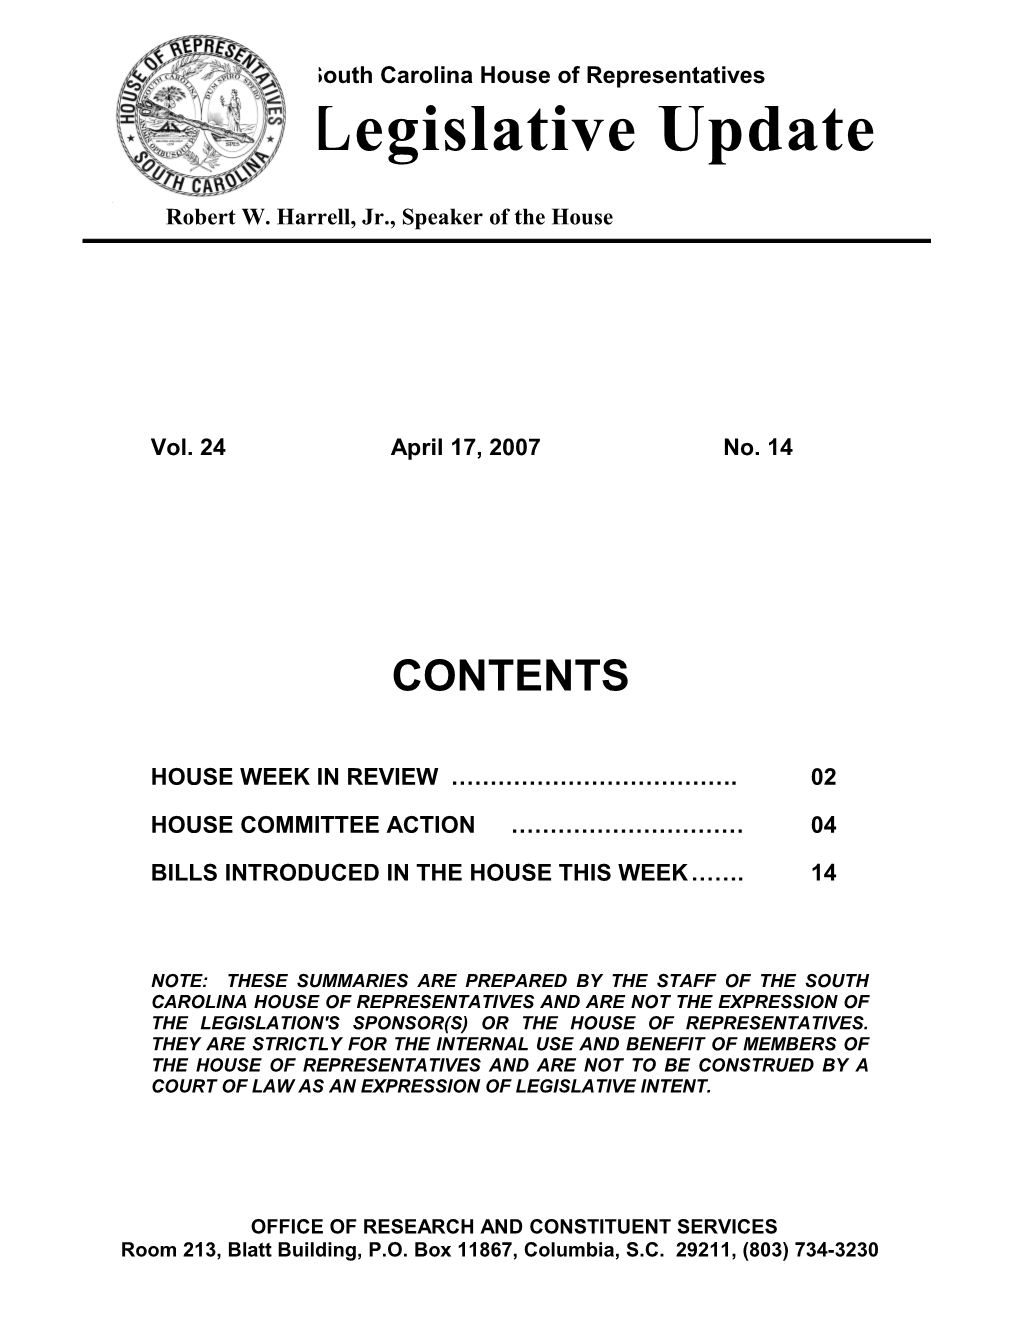 Legislative Update - Vol. 24 No. 14 April 17, 2007 - South Carolina Legislature Online